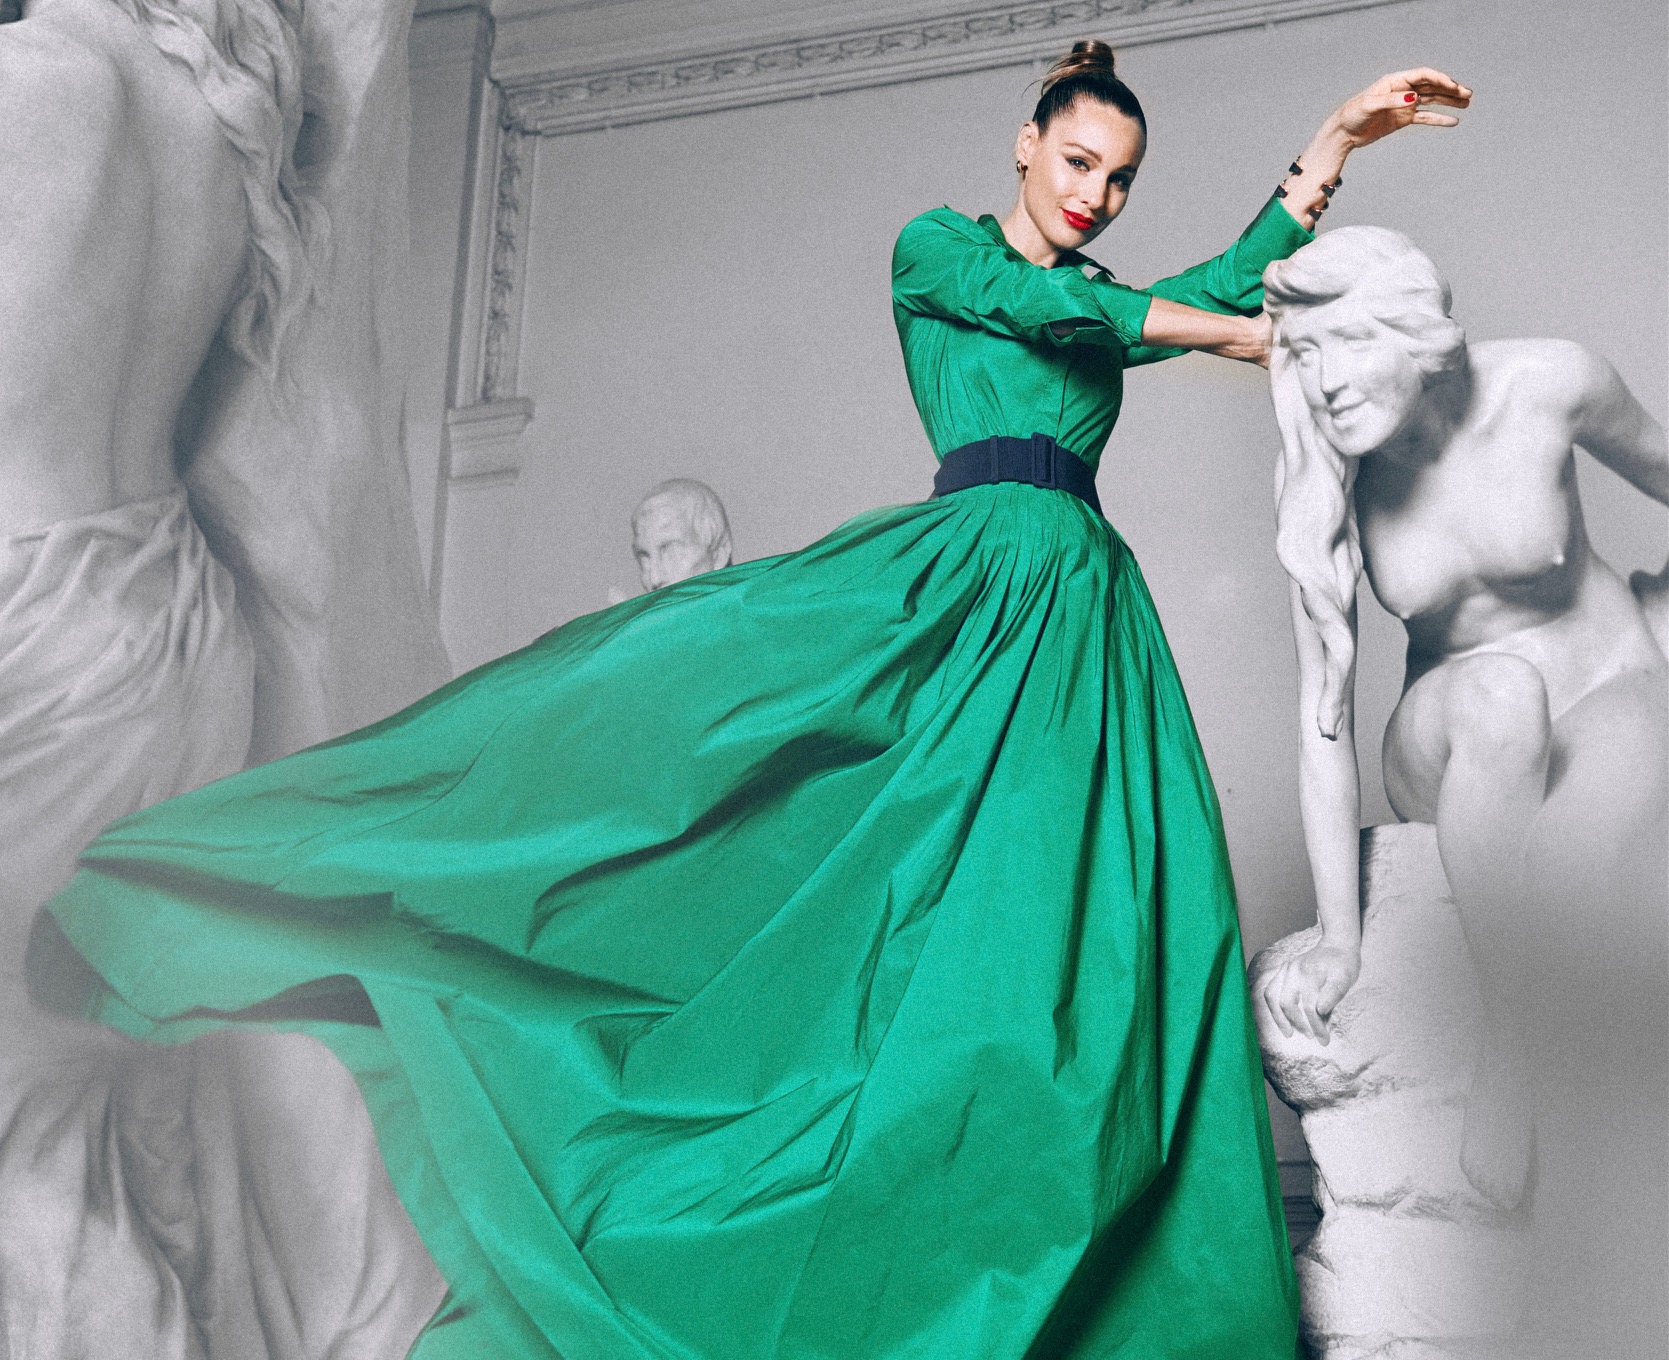 Nueva edición Especial Moda y Belleza: Pampita habla en exclusiva